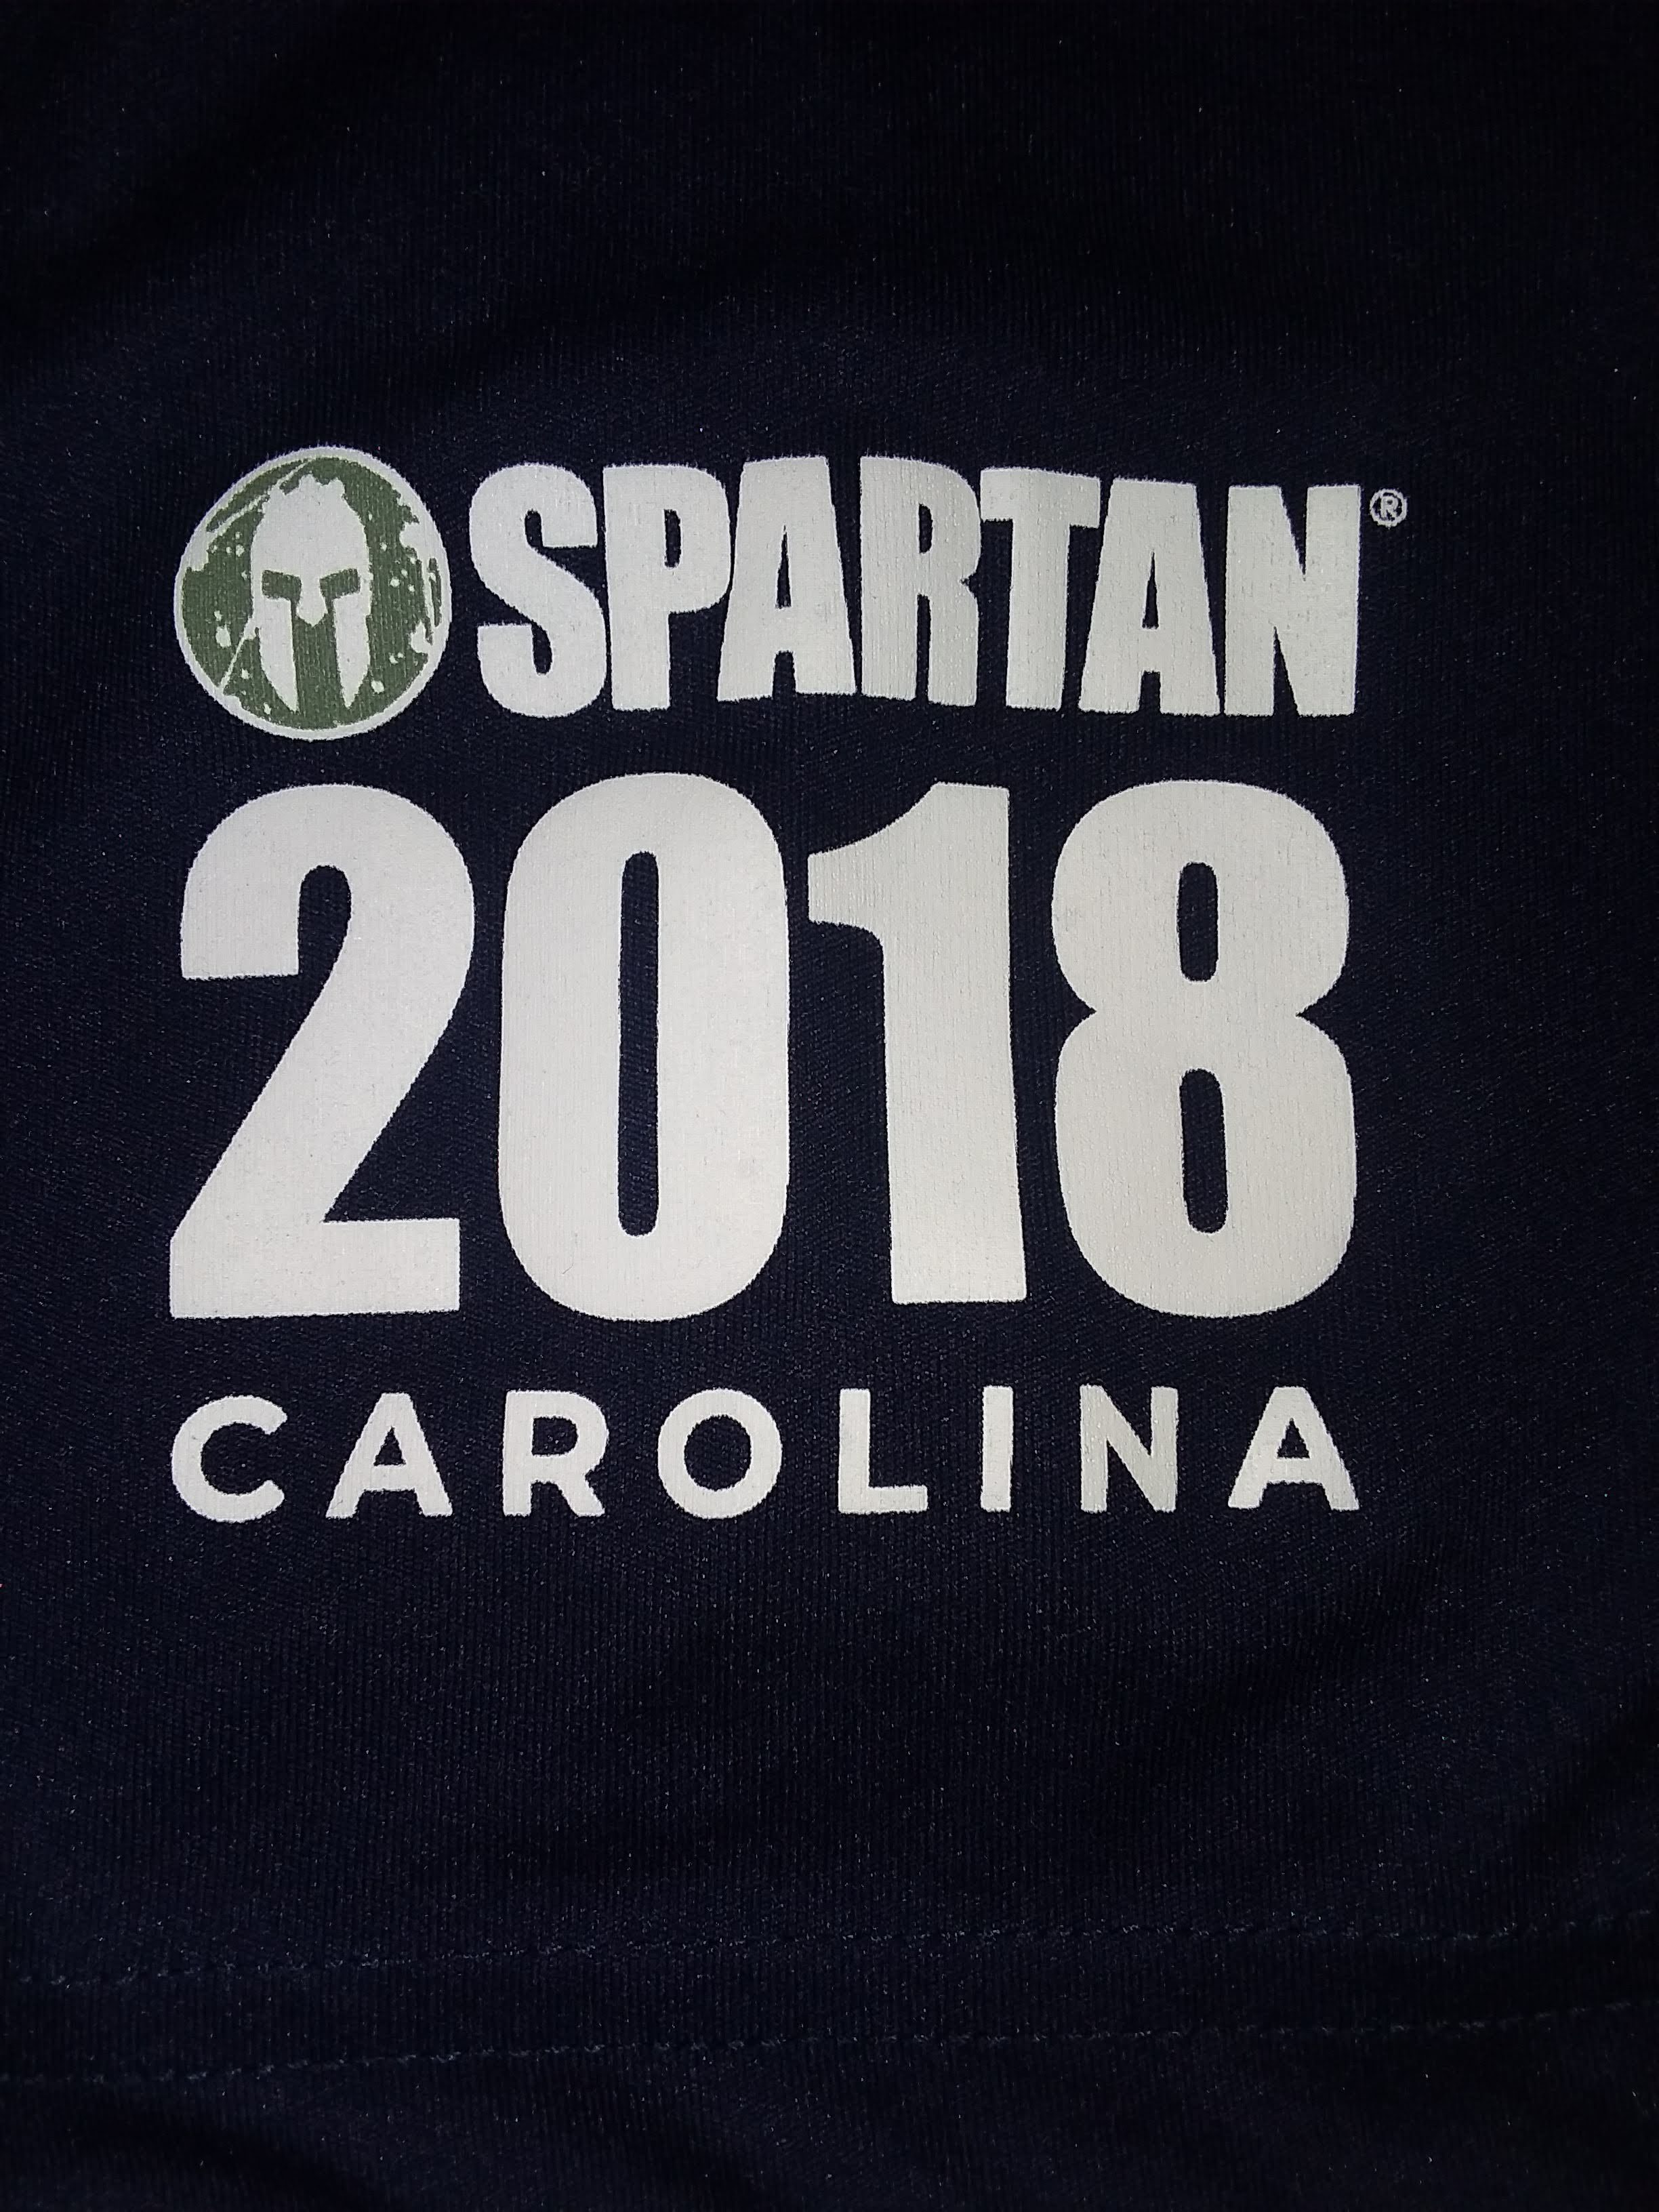 Spartan_Beast_Shirt_Venue_2018_Spartanburg_Sleeve